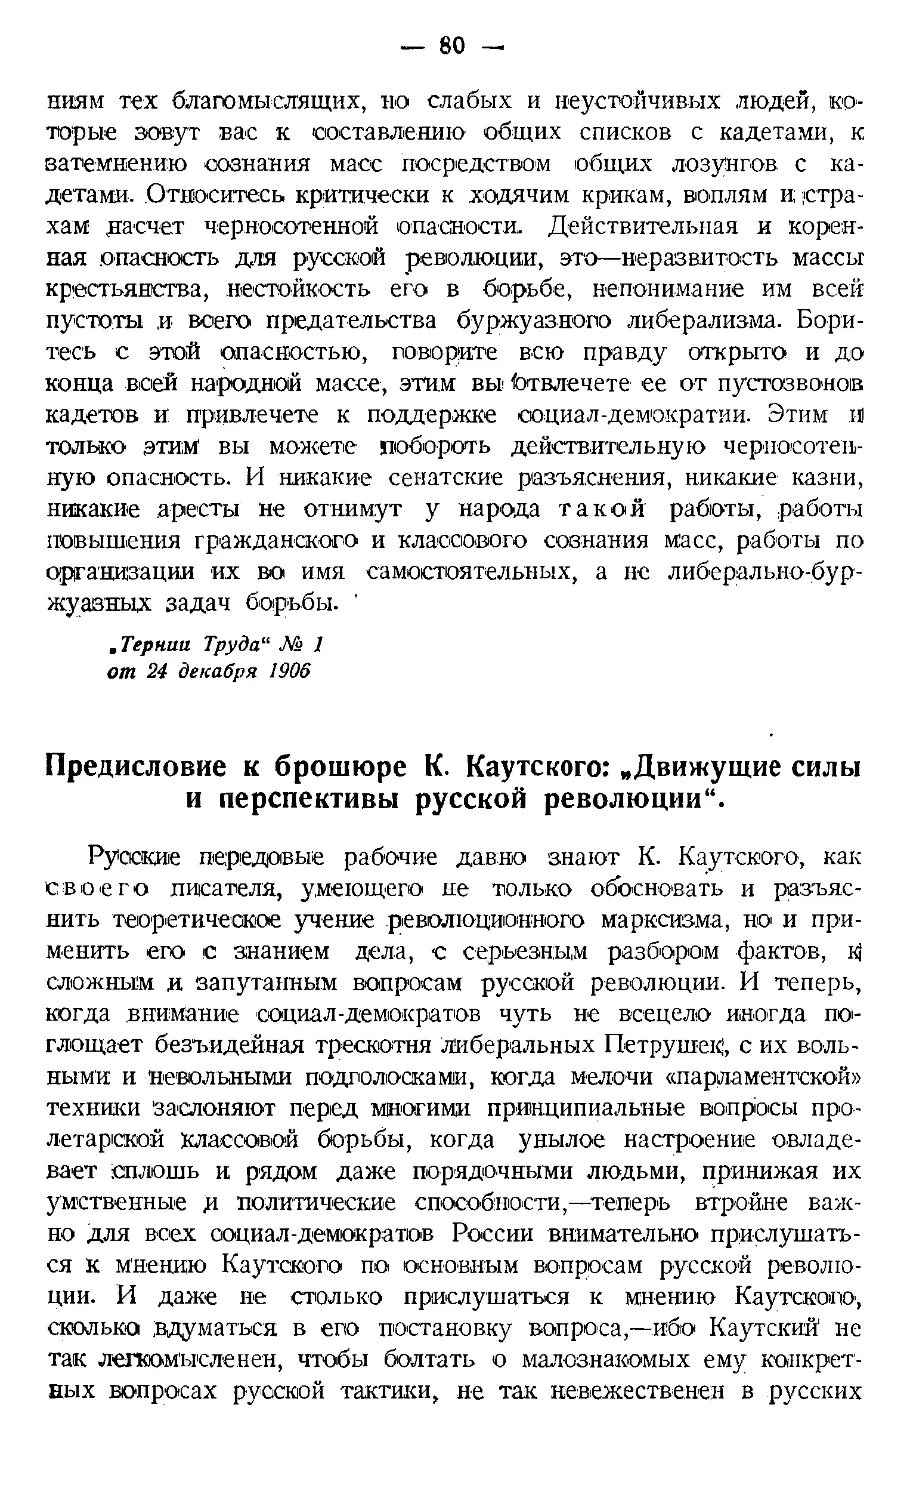 Предисловие к брошюре К. Каутского: „Движущие силы и перспективы русской революции\